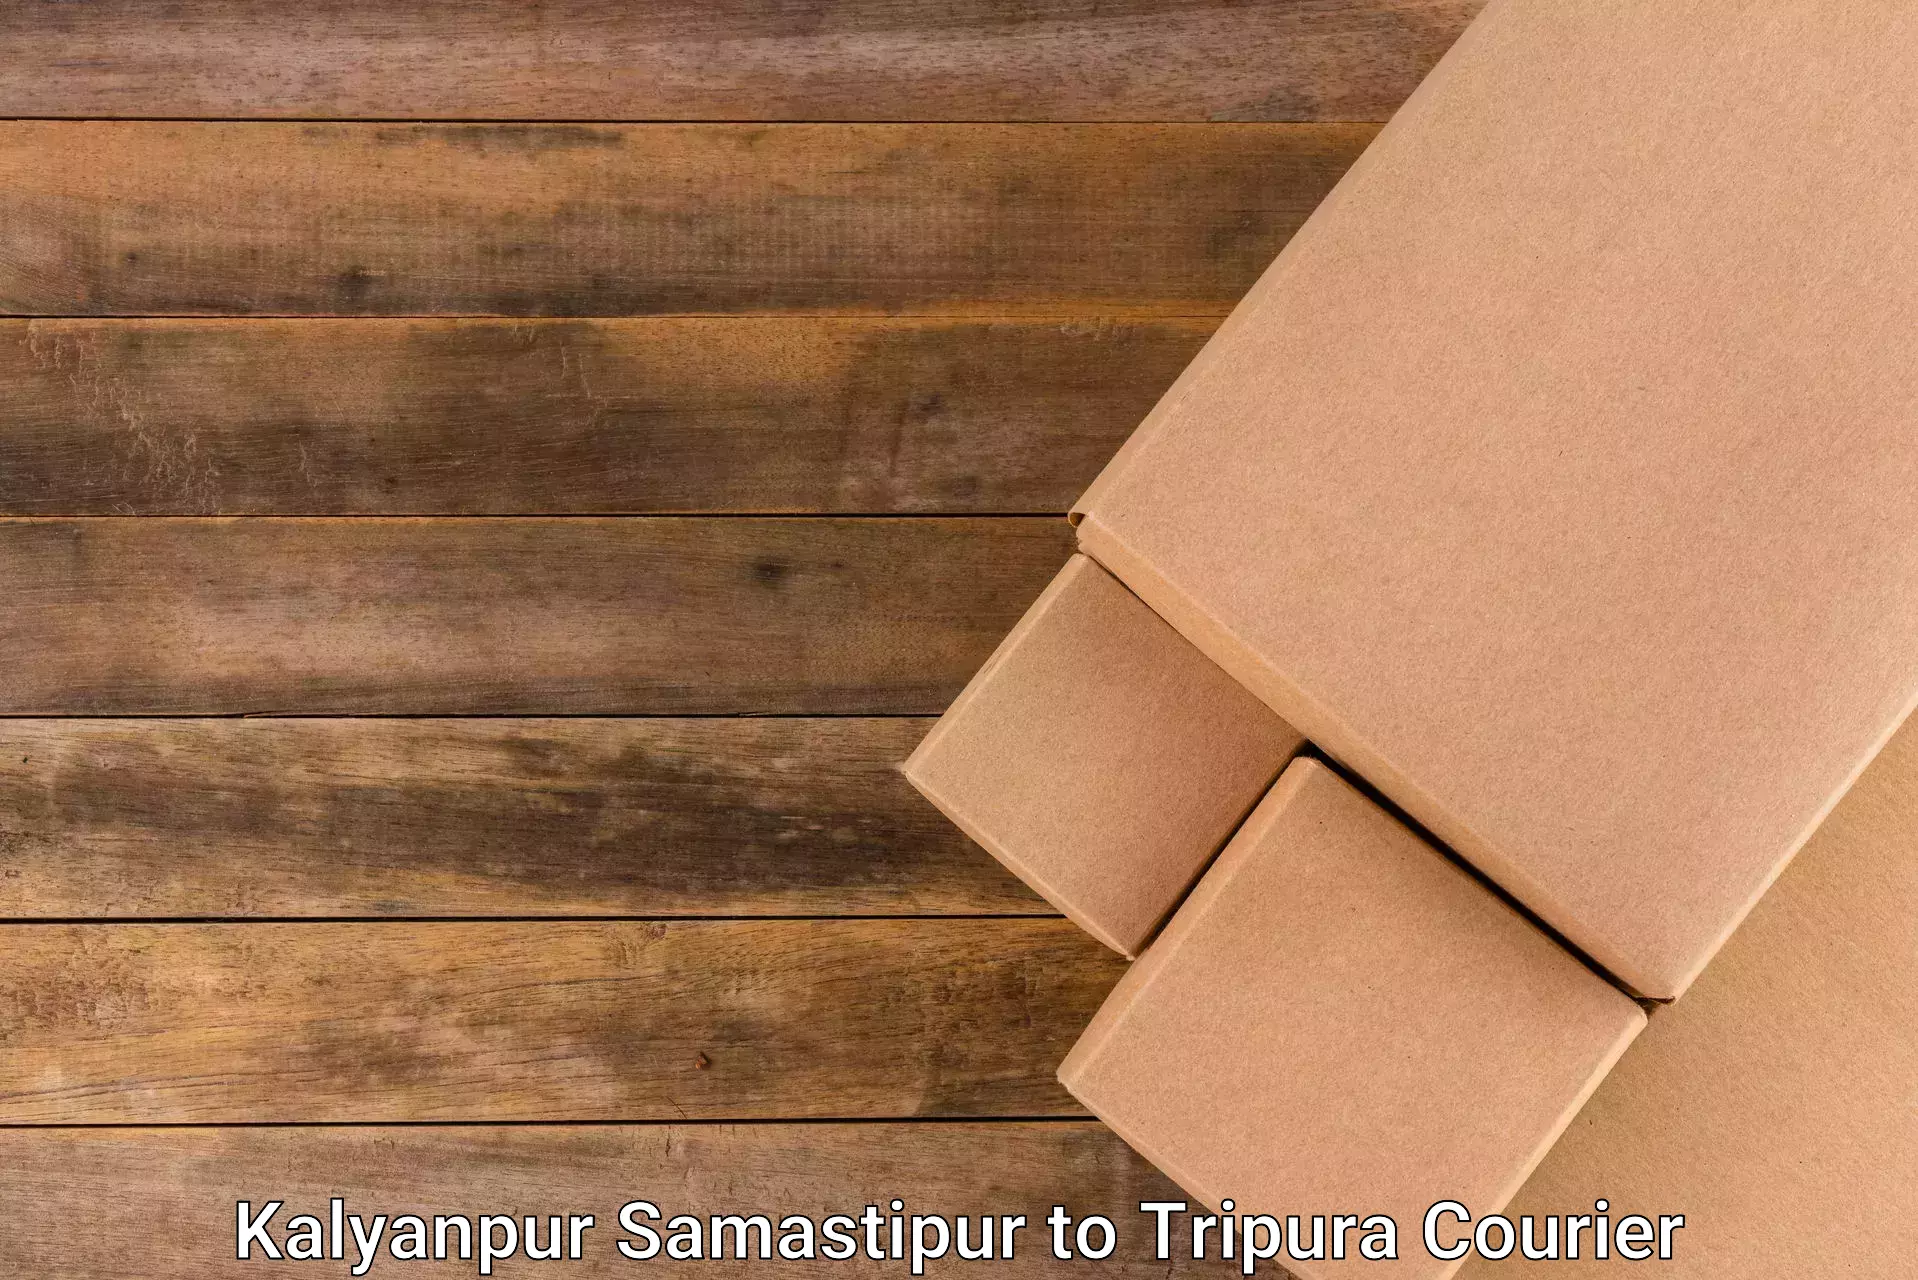 Pharmaceutical courier Kalyanpur Samastipur to Radhakishorepur